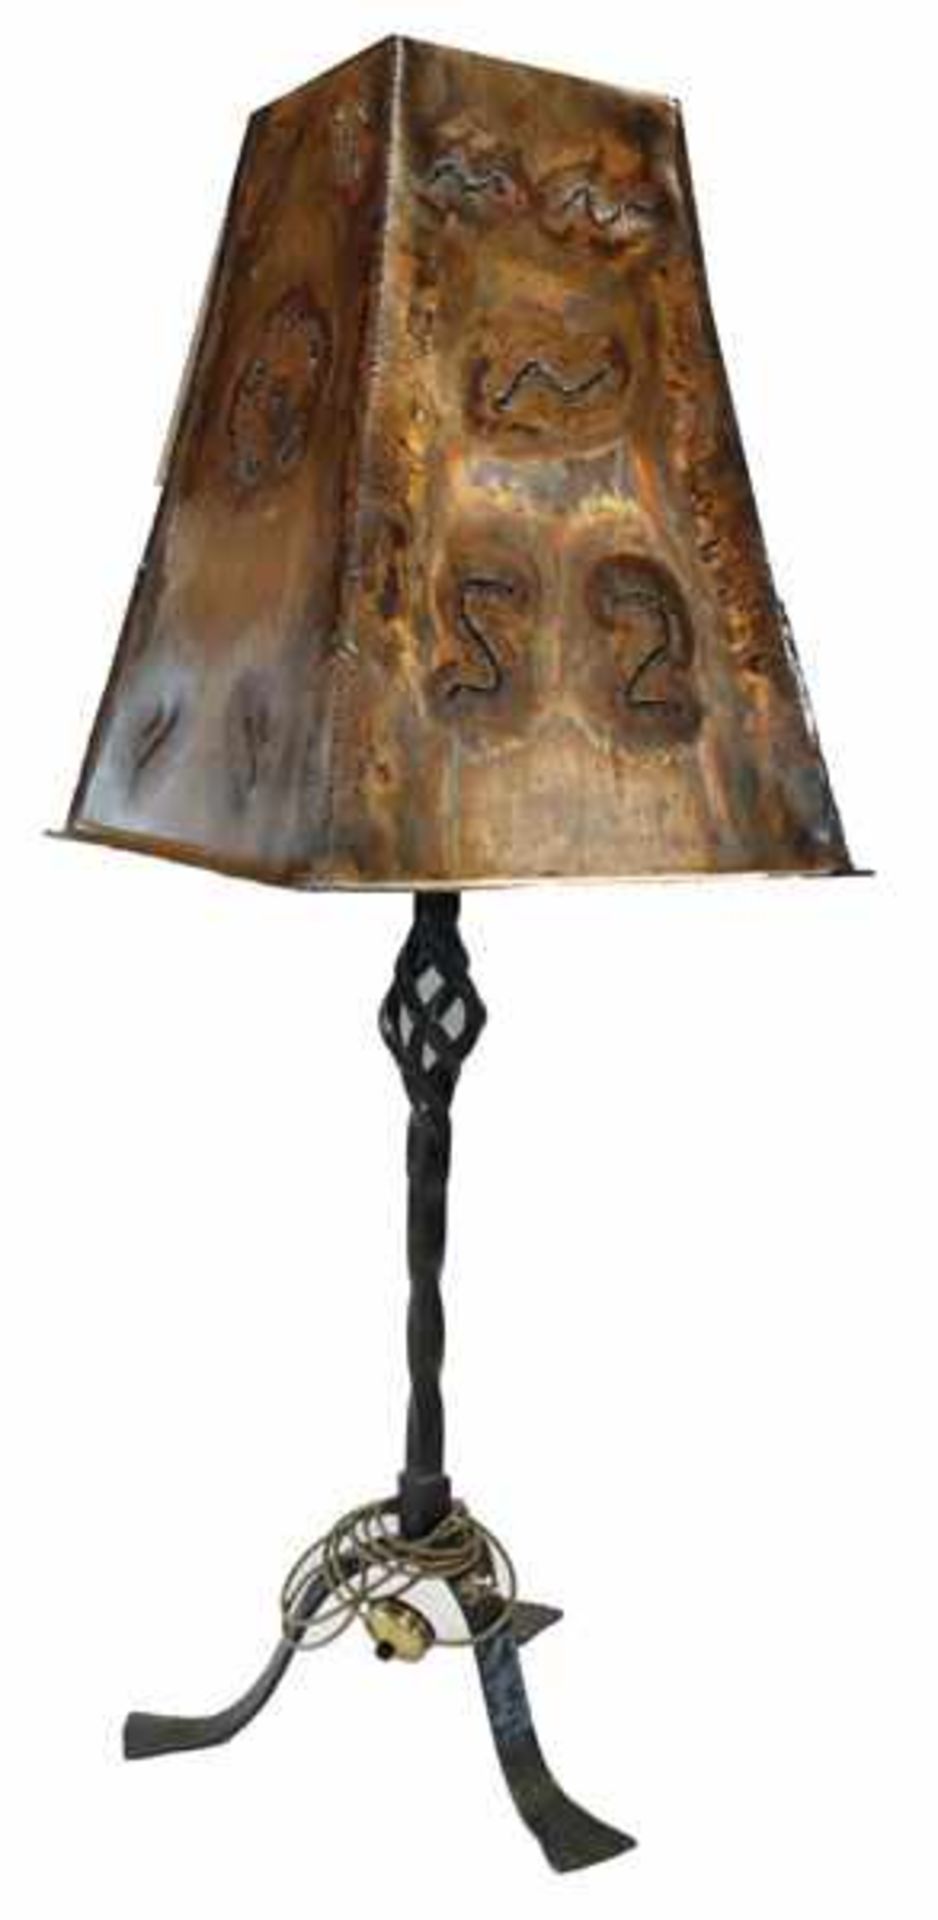 Schmiedeeiserne Stehlampe mit Kupferschirm, H 143 cm, 54 cm x 54 cm, Gebrauchsspuren, Versand per